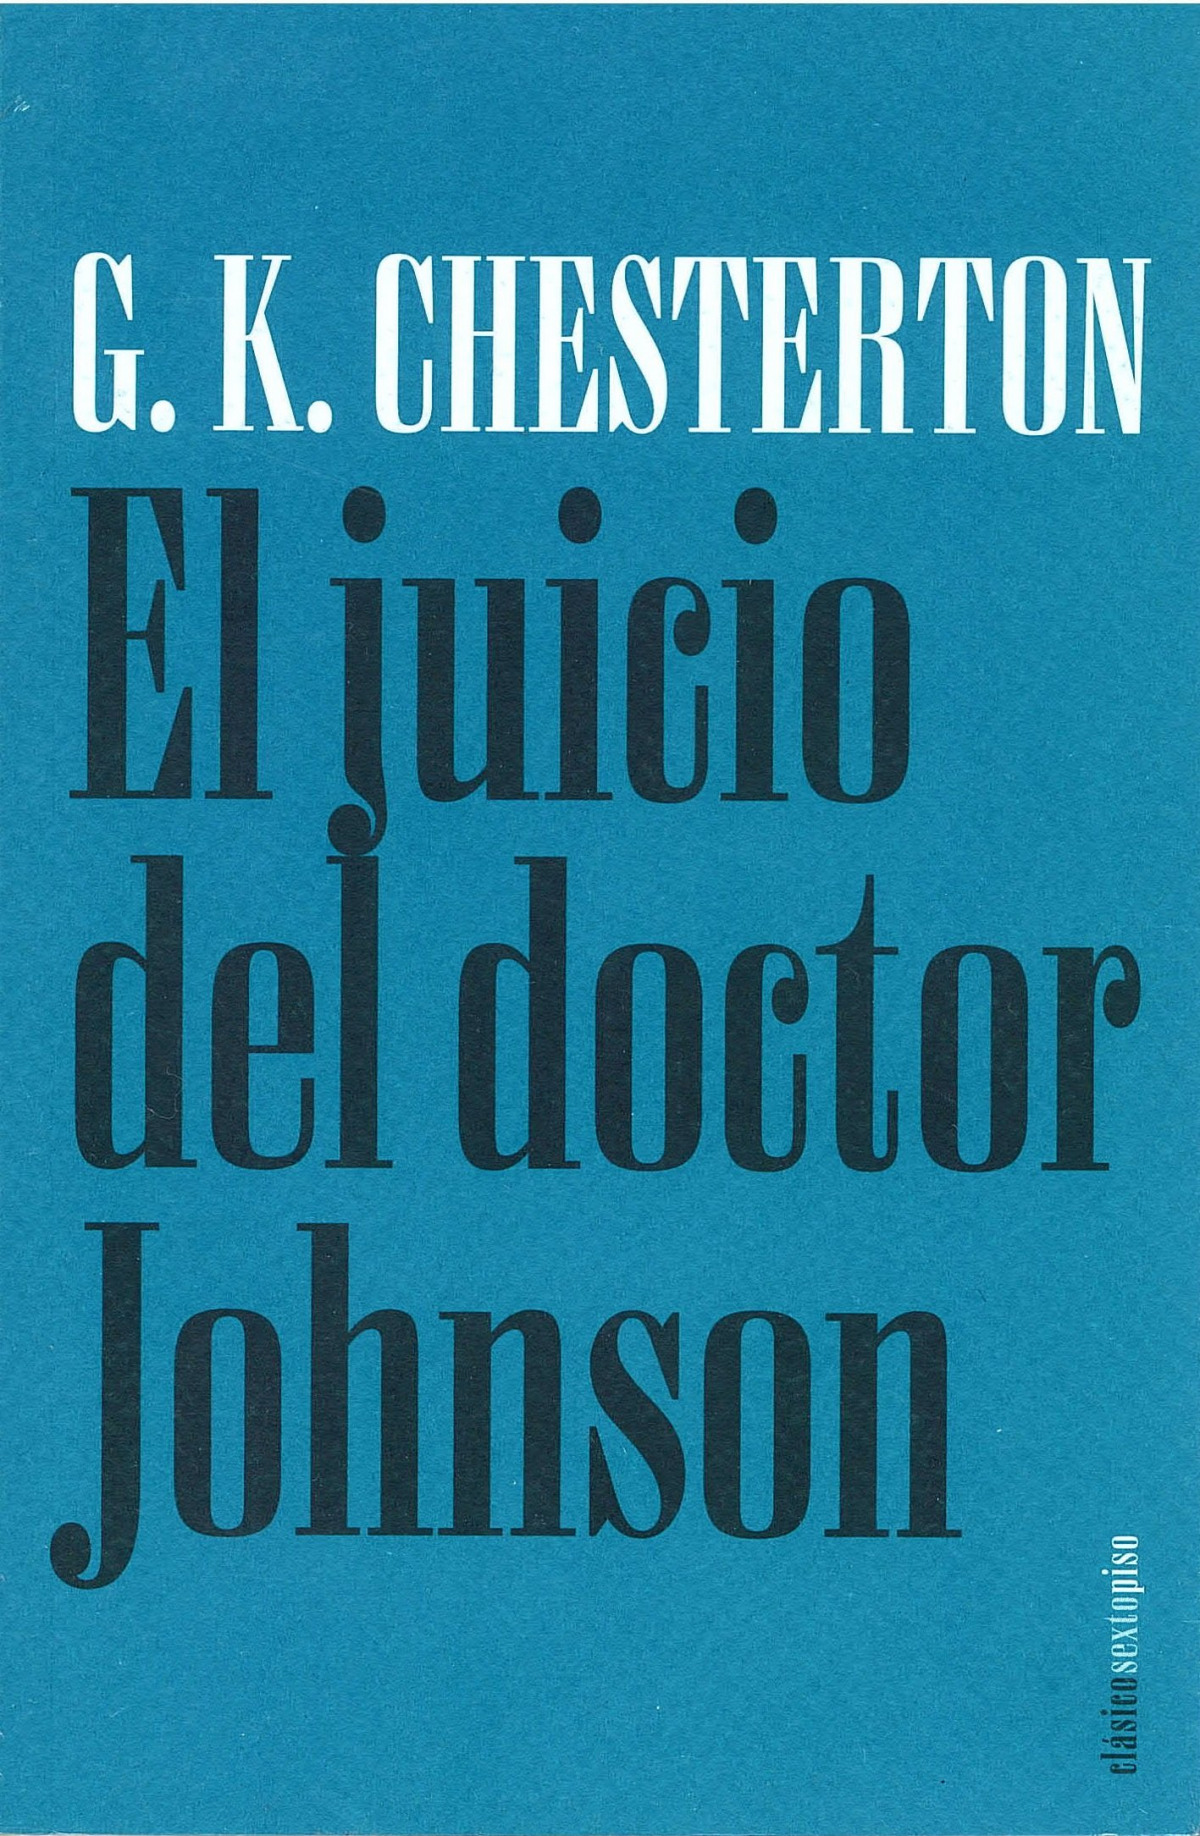 El juicio del doctor johnson - G.K.Chesterton